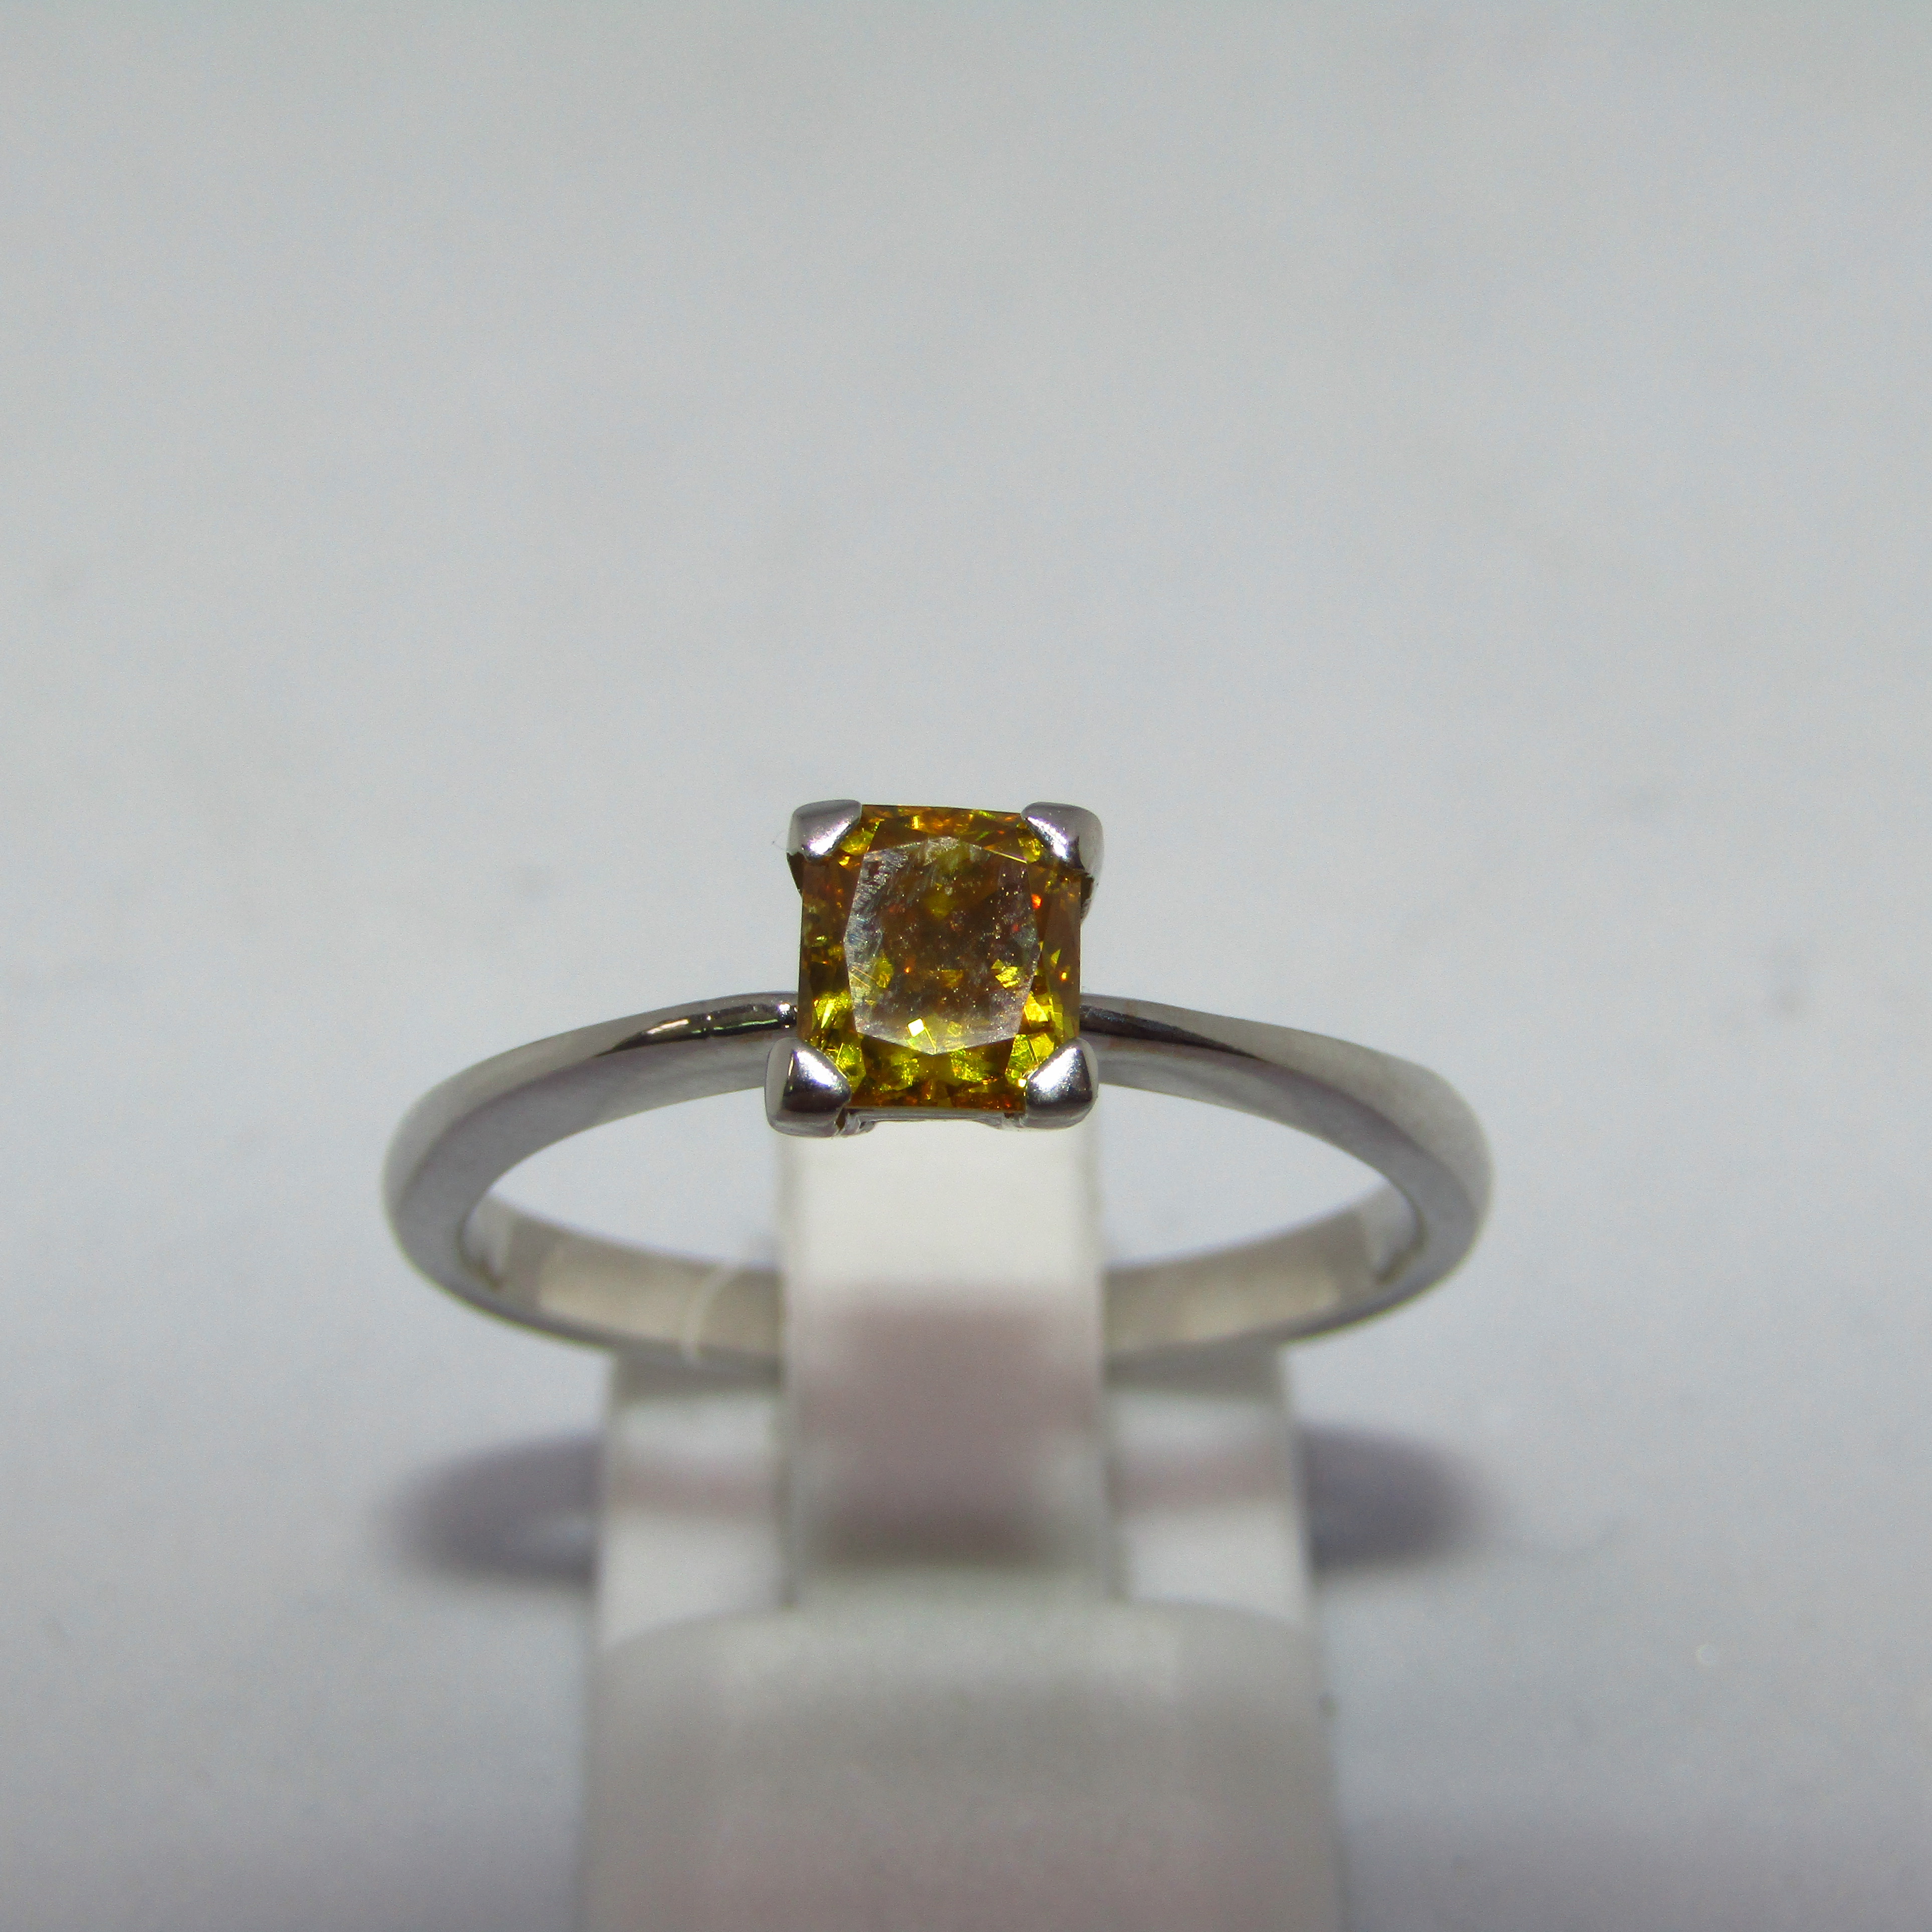 Solitario en Oro Blanco con Diamante Natural talla Rectangular, de 0,70 ct. Color Fancy vivid yellow, Claridad SI2. Certificado IGE.